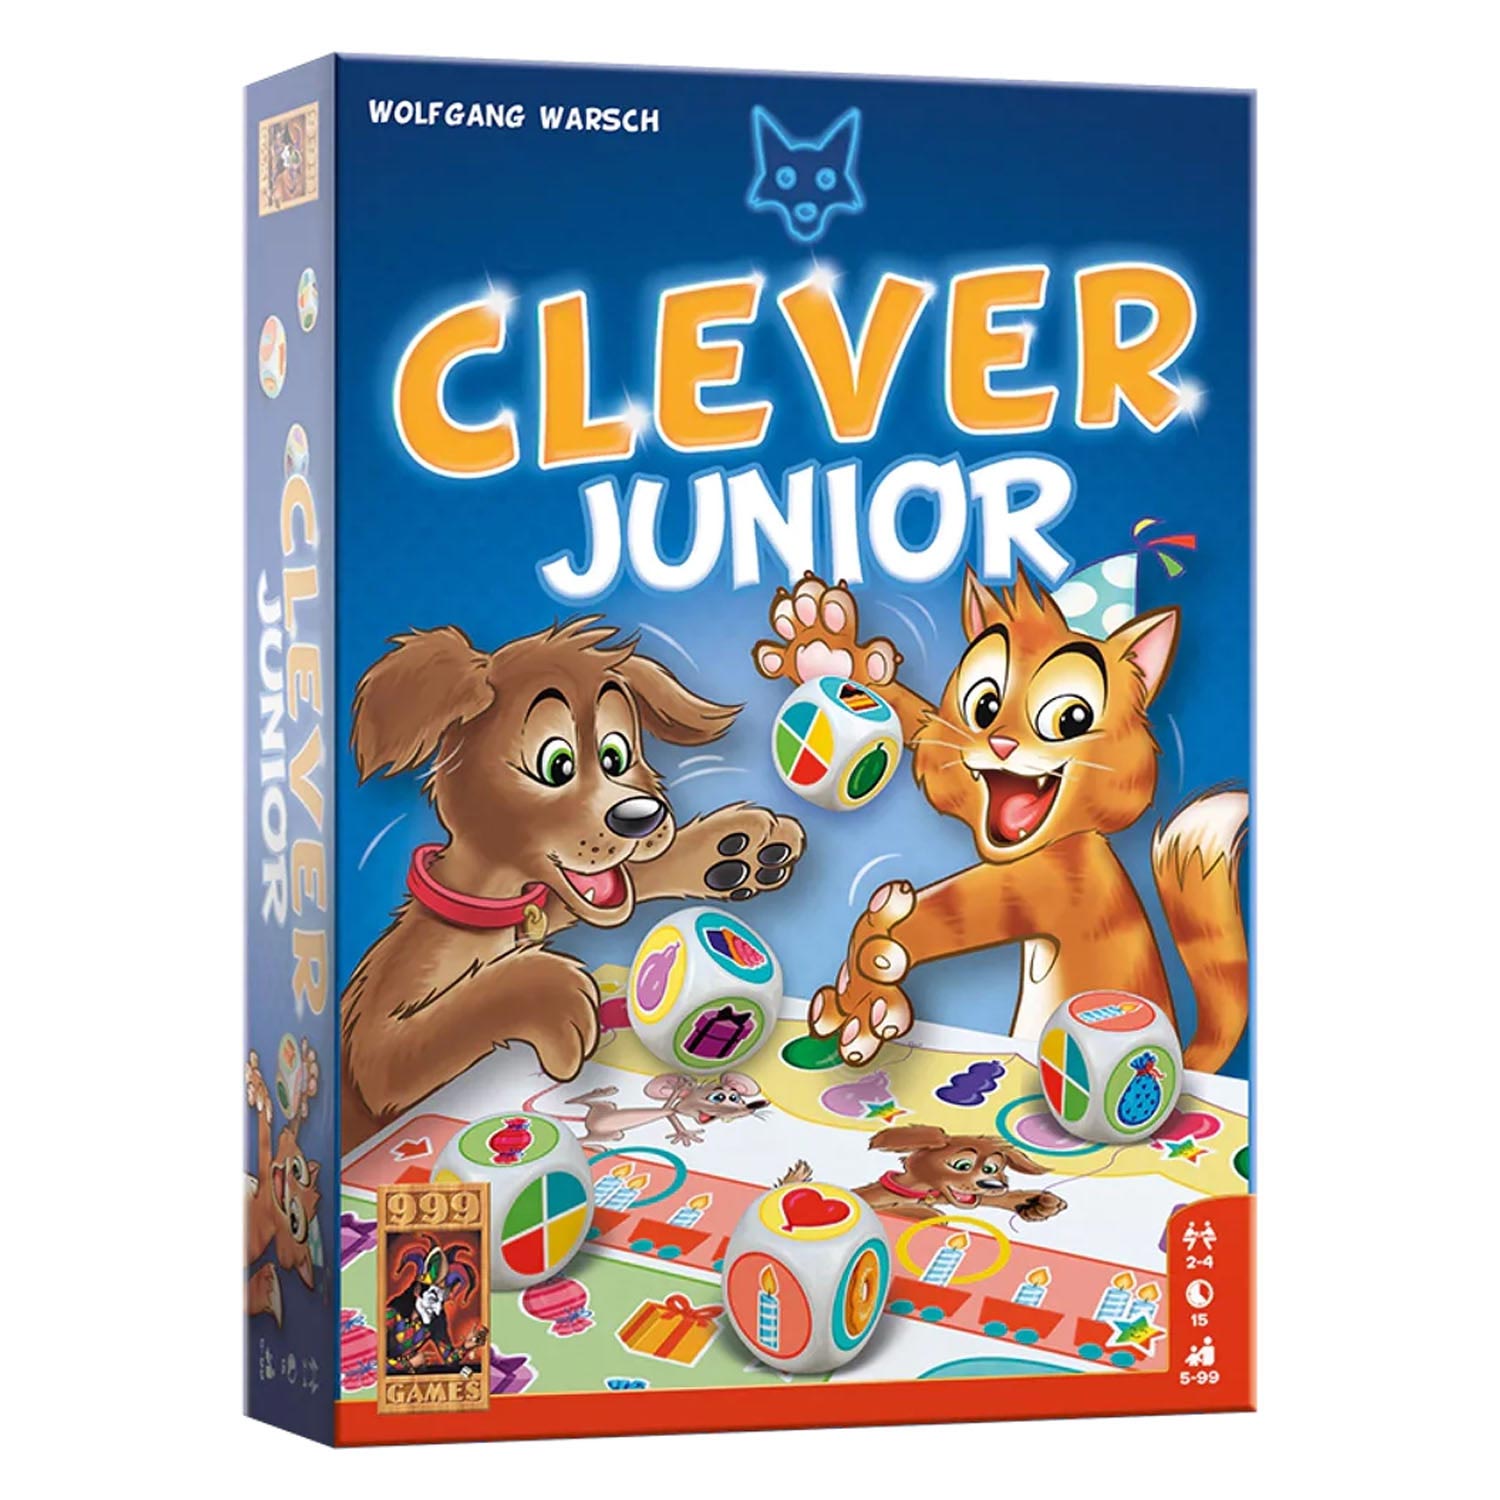 Junior-Würfelspiel　Kaufen　Spielzeug　Sie　Cleveres　online?　Lobbes